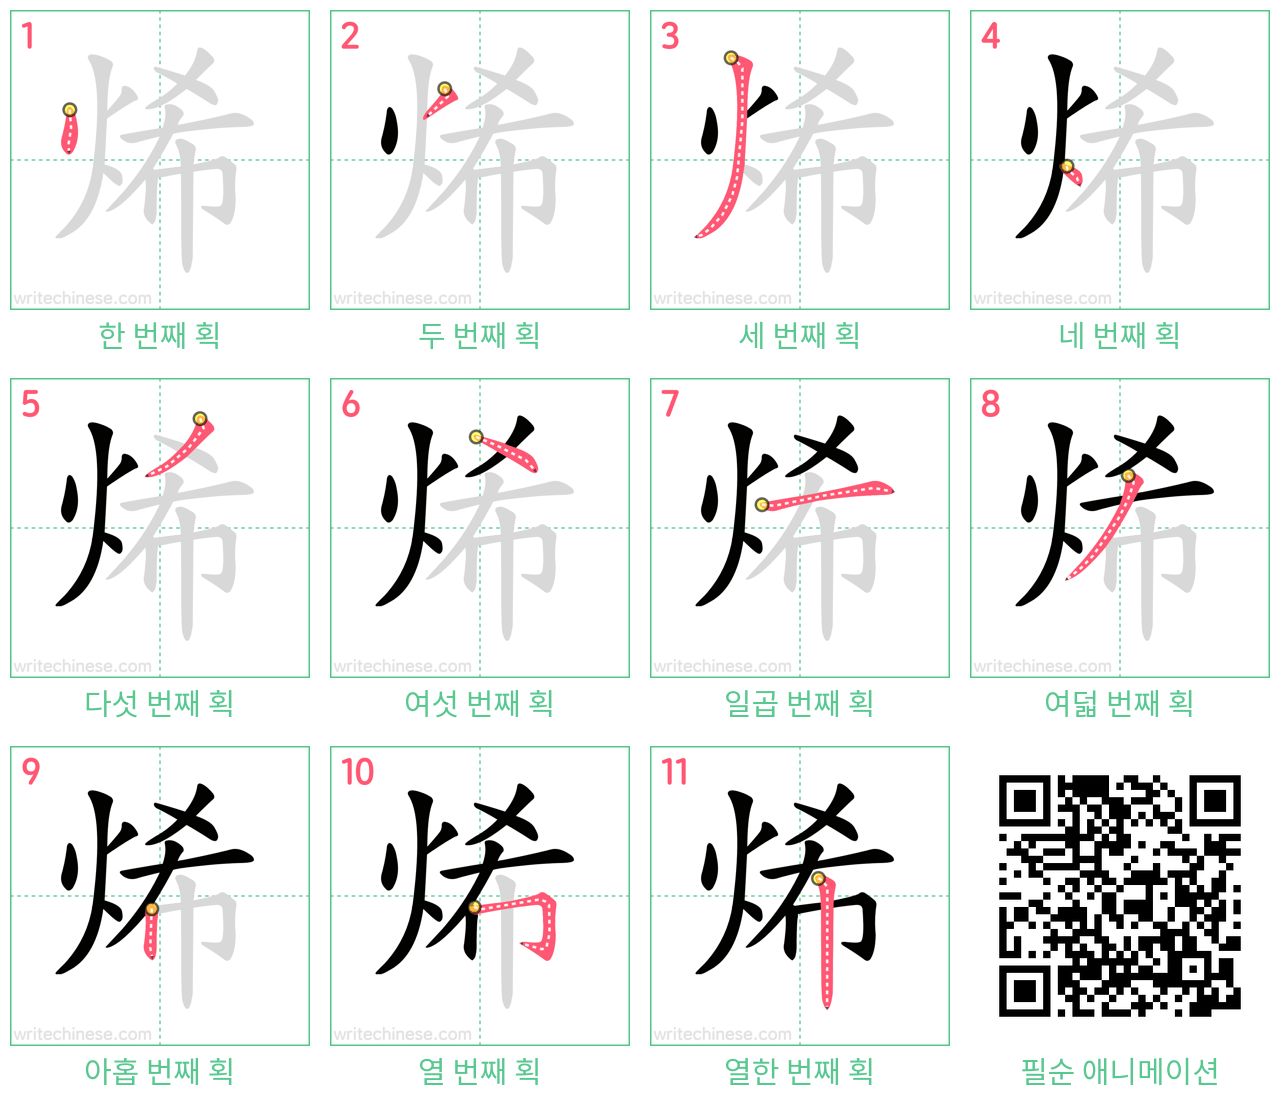 烯 step-by-step stroke order diagrams